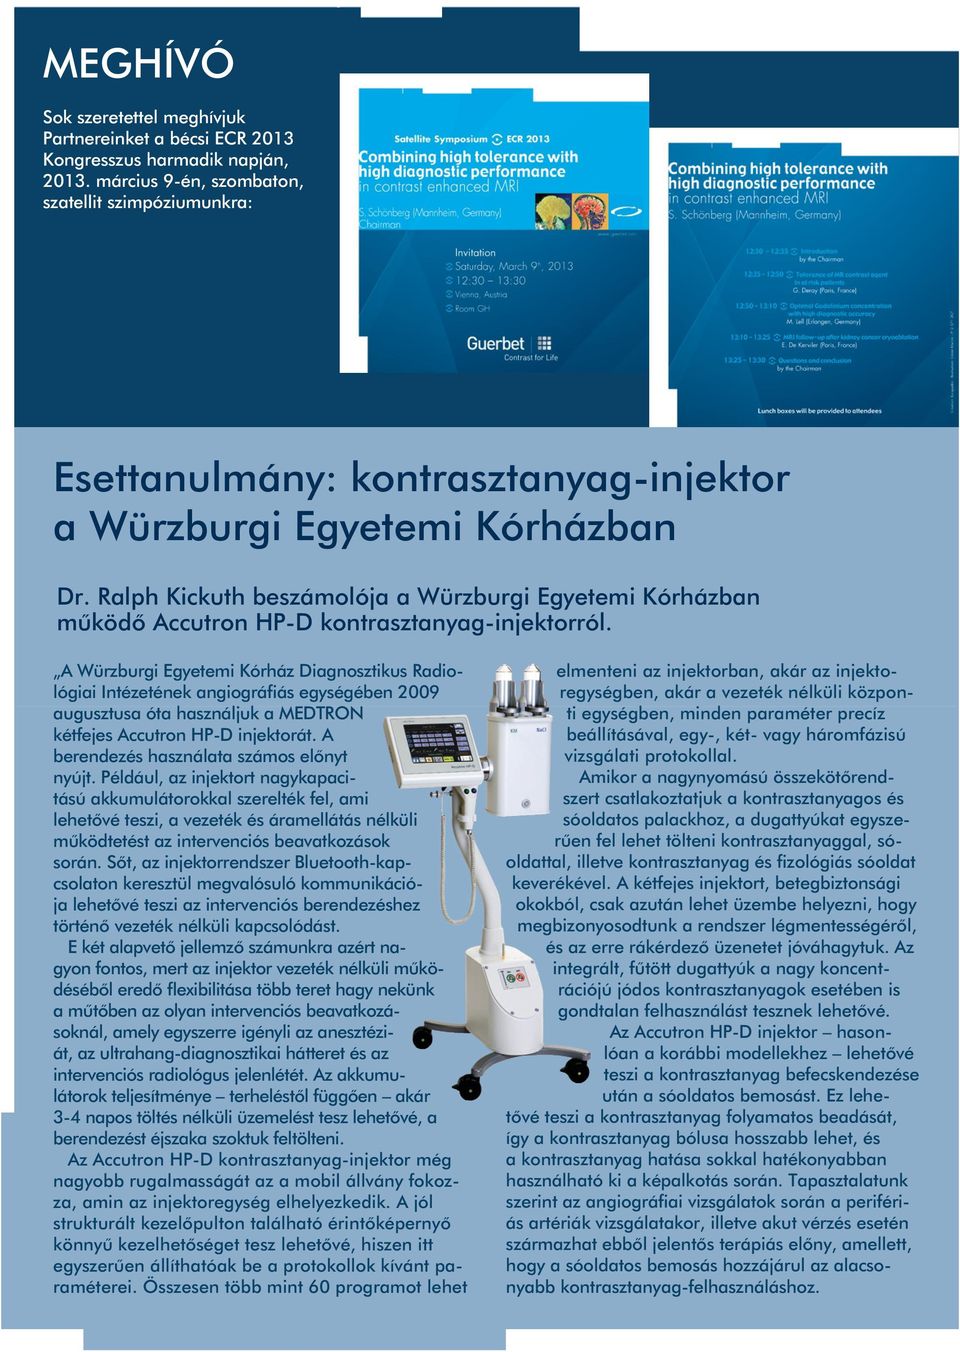 Ralph Kickuth beszámolója a Würzburgi Egyetemi Kórházban mûködô Accutron HP-D kontrasztanyag-injektorról.